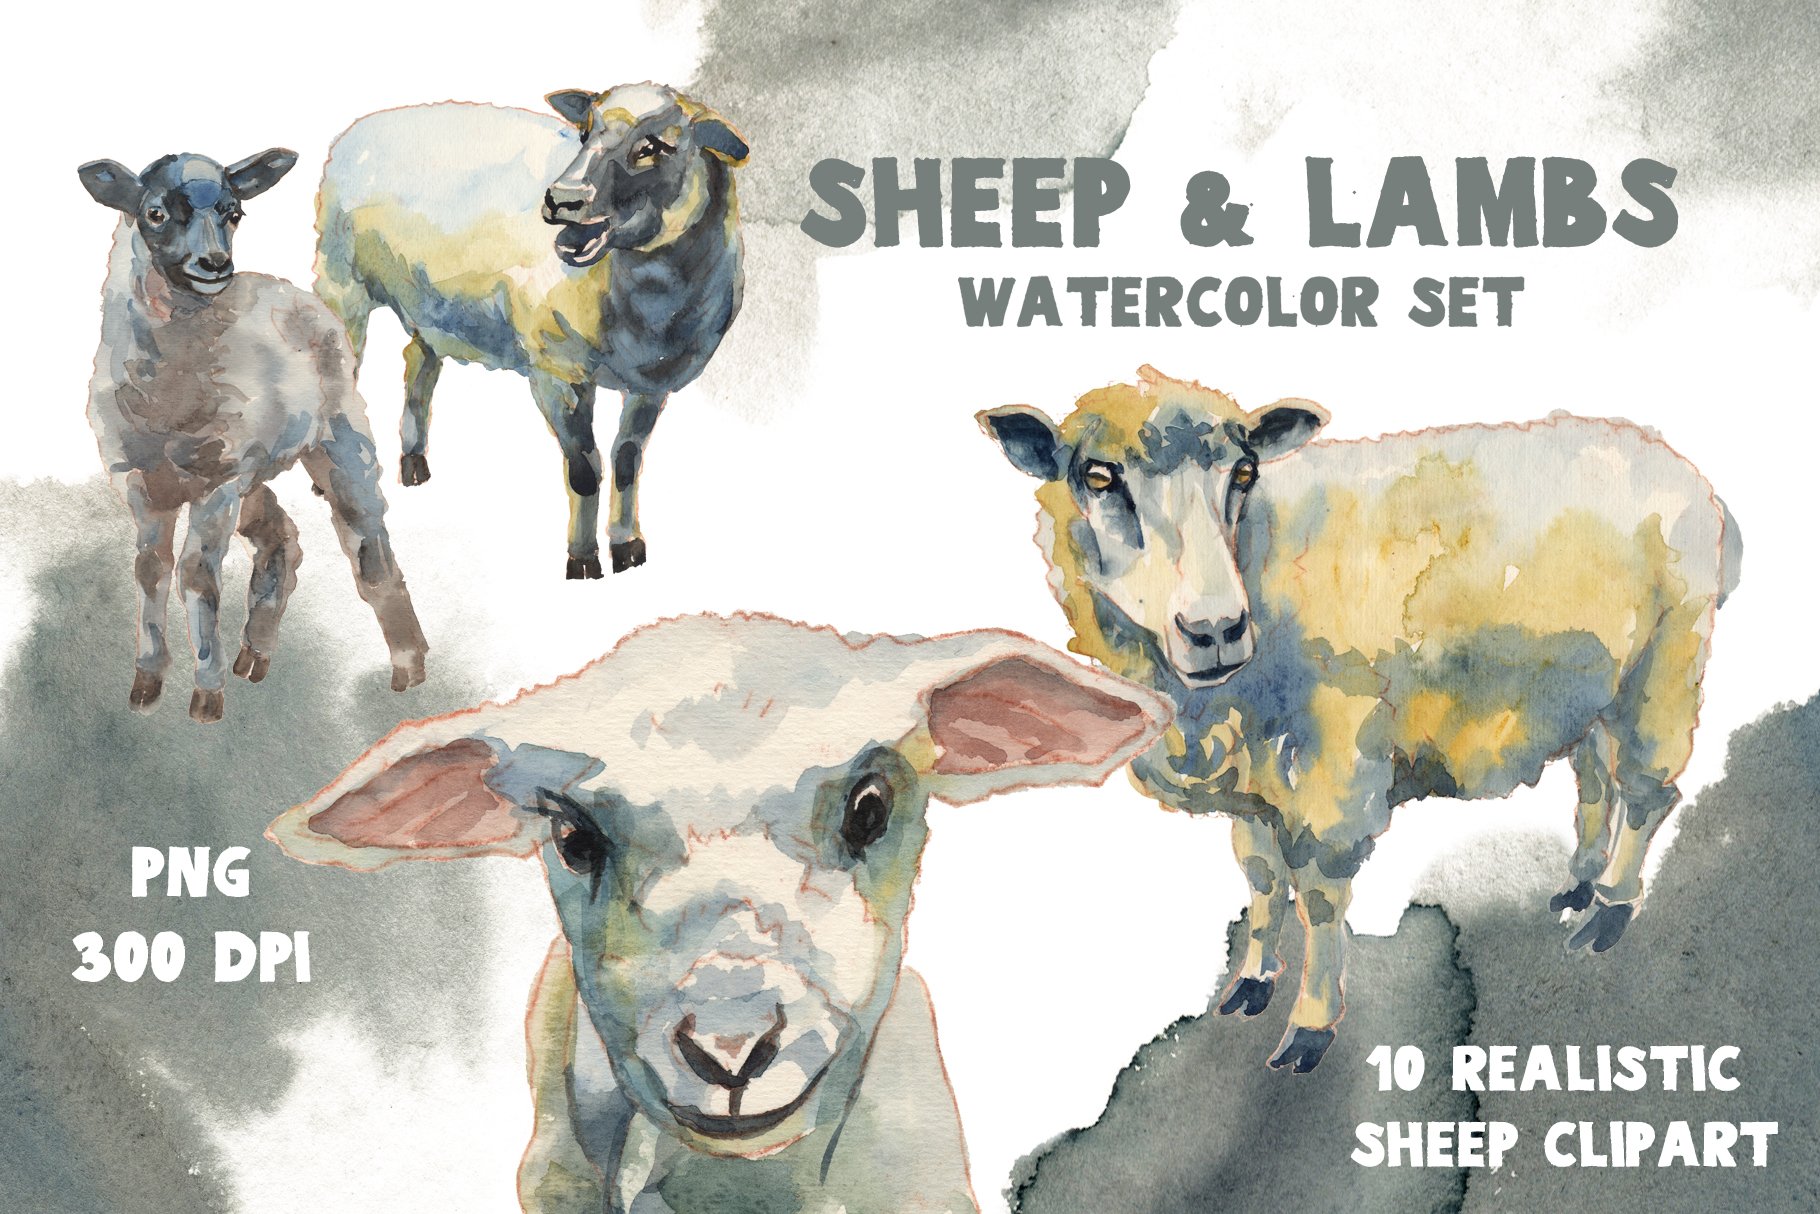 Sheep & Lambs Watercolor Set.